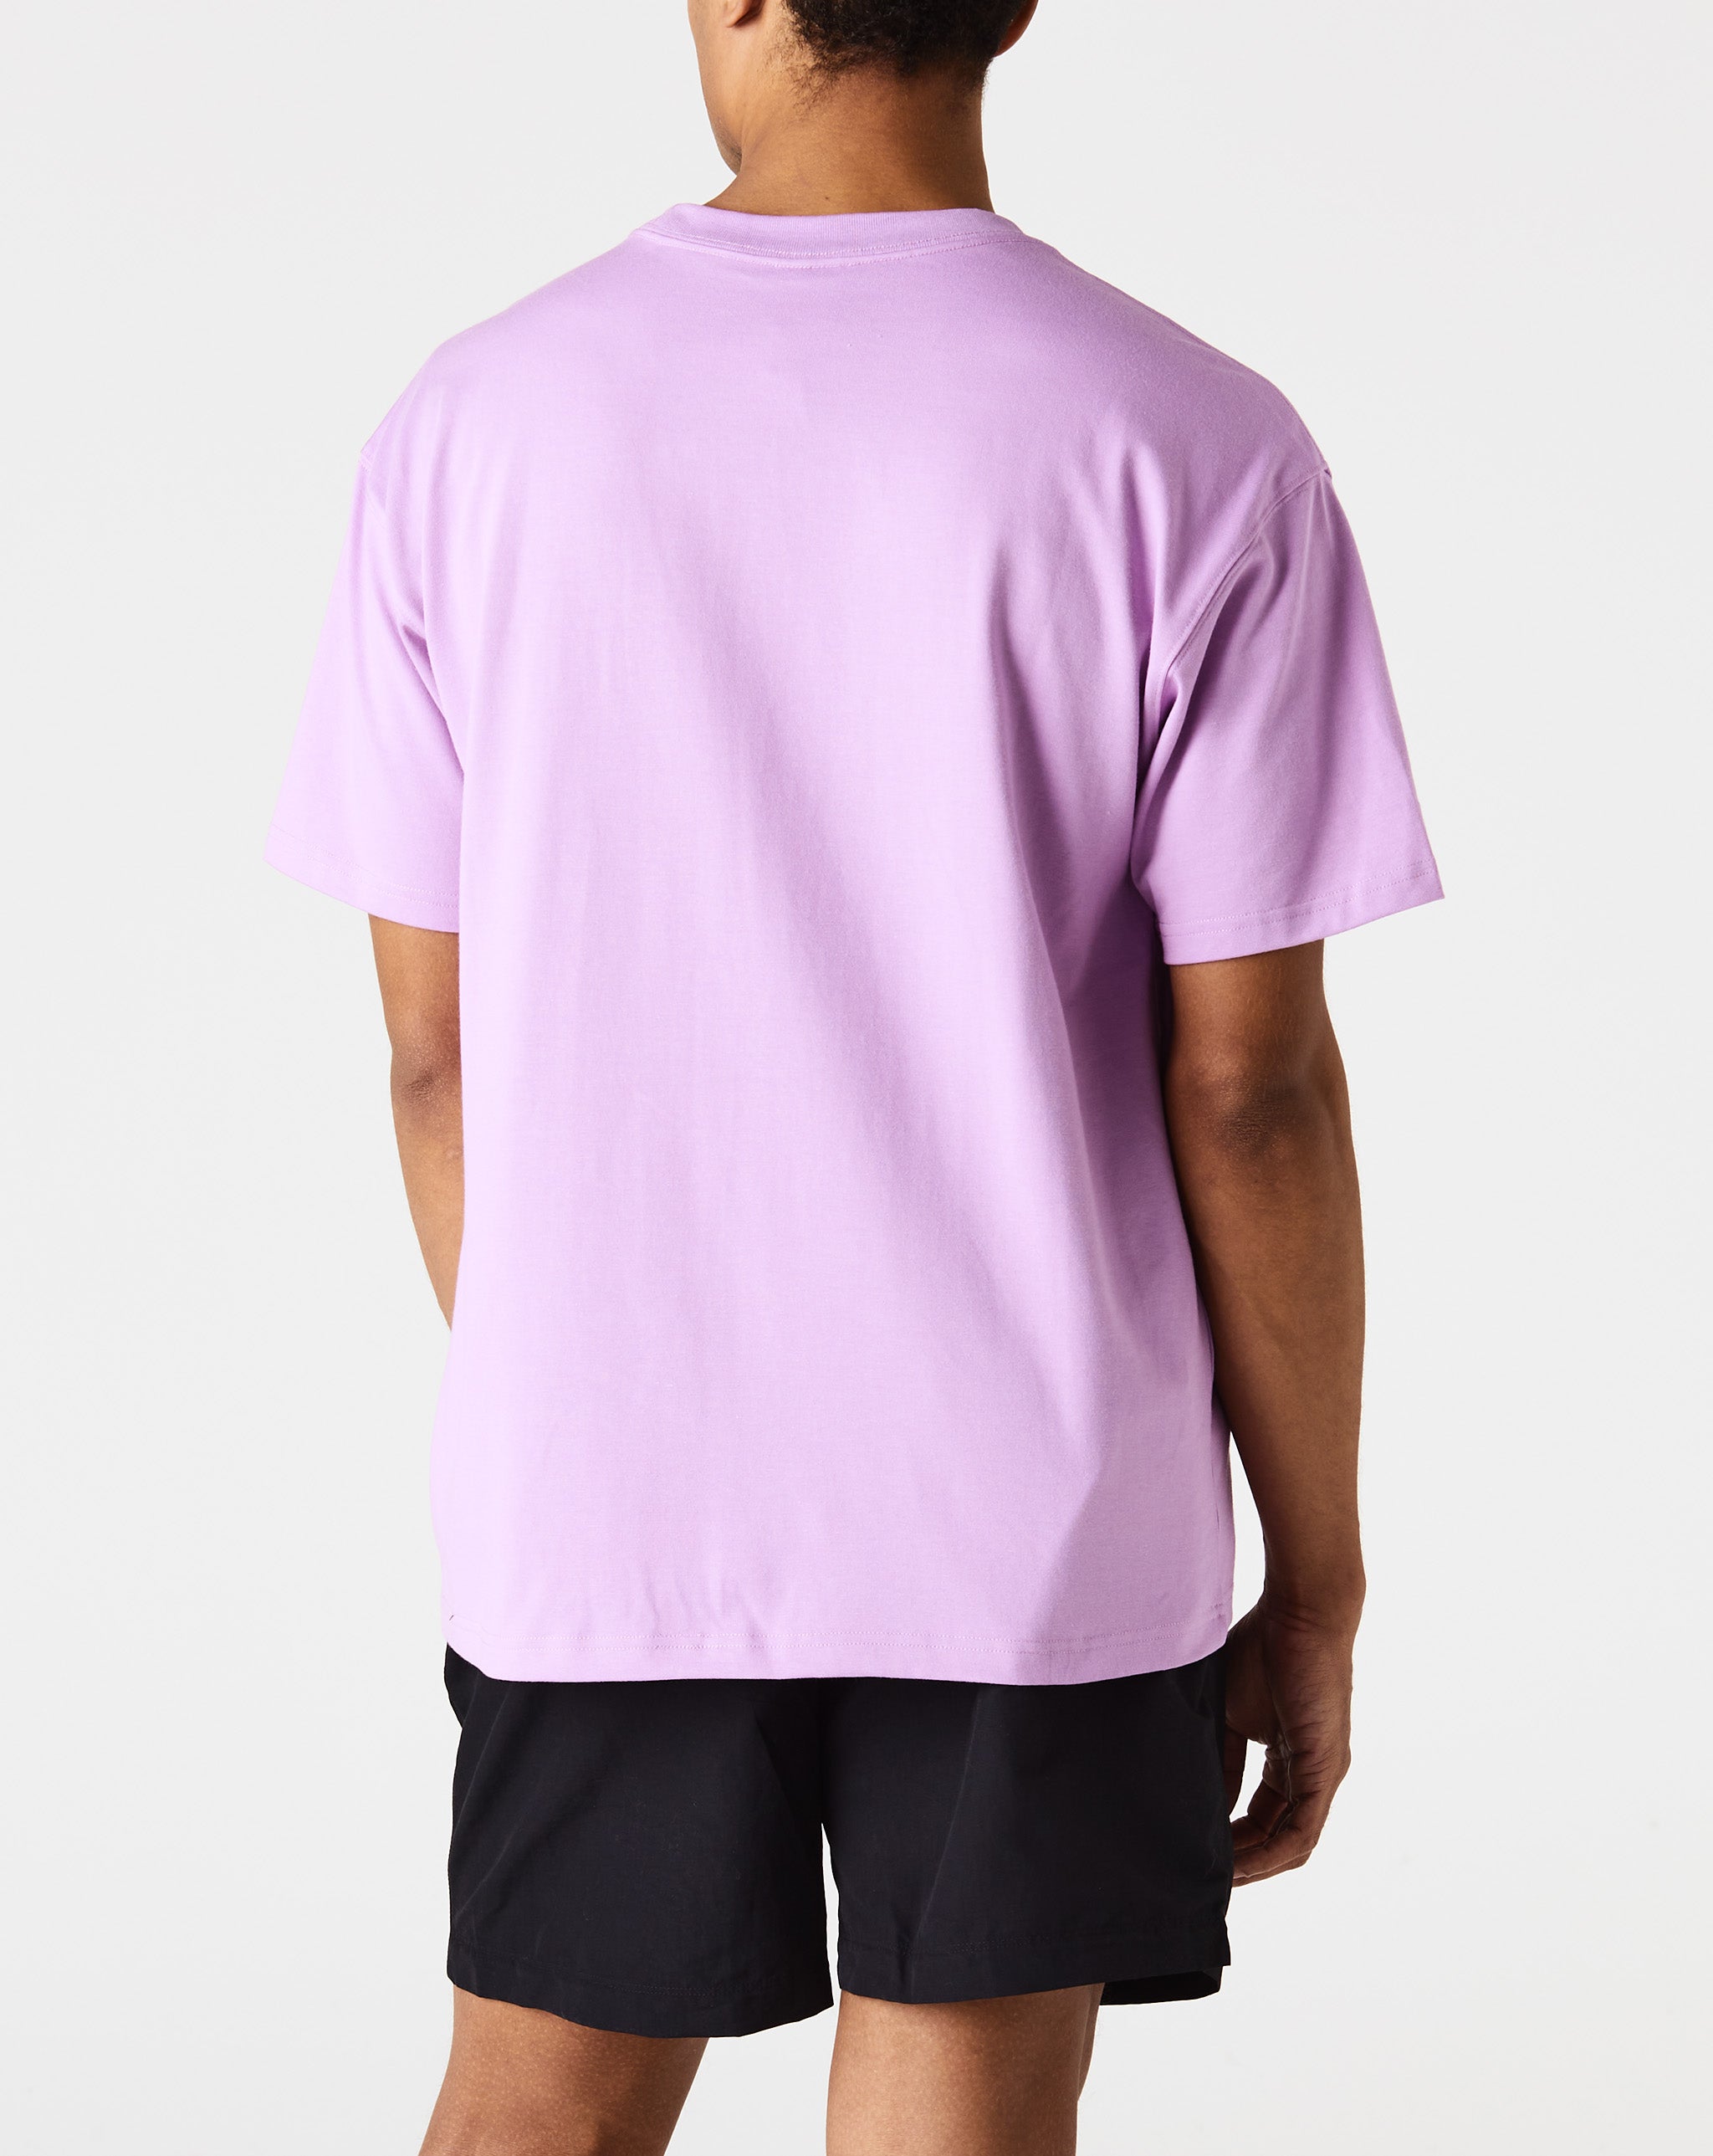 Nike ACG T-Shirt  - Cheap Urlfreeze Jordan outlet